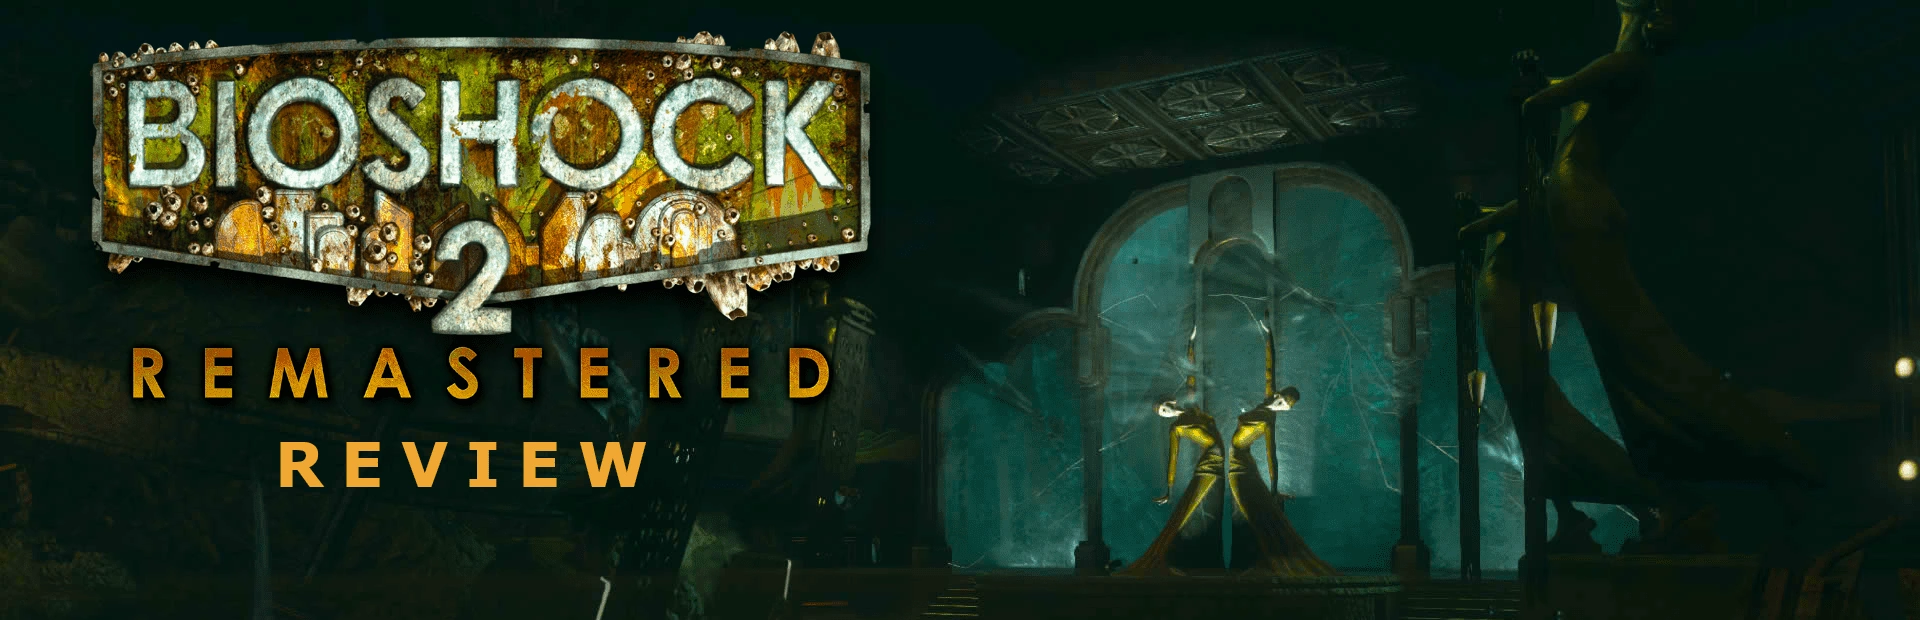 BioShock 2 Remastered.banner2